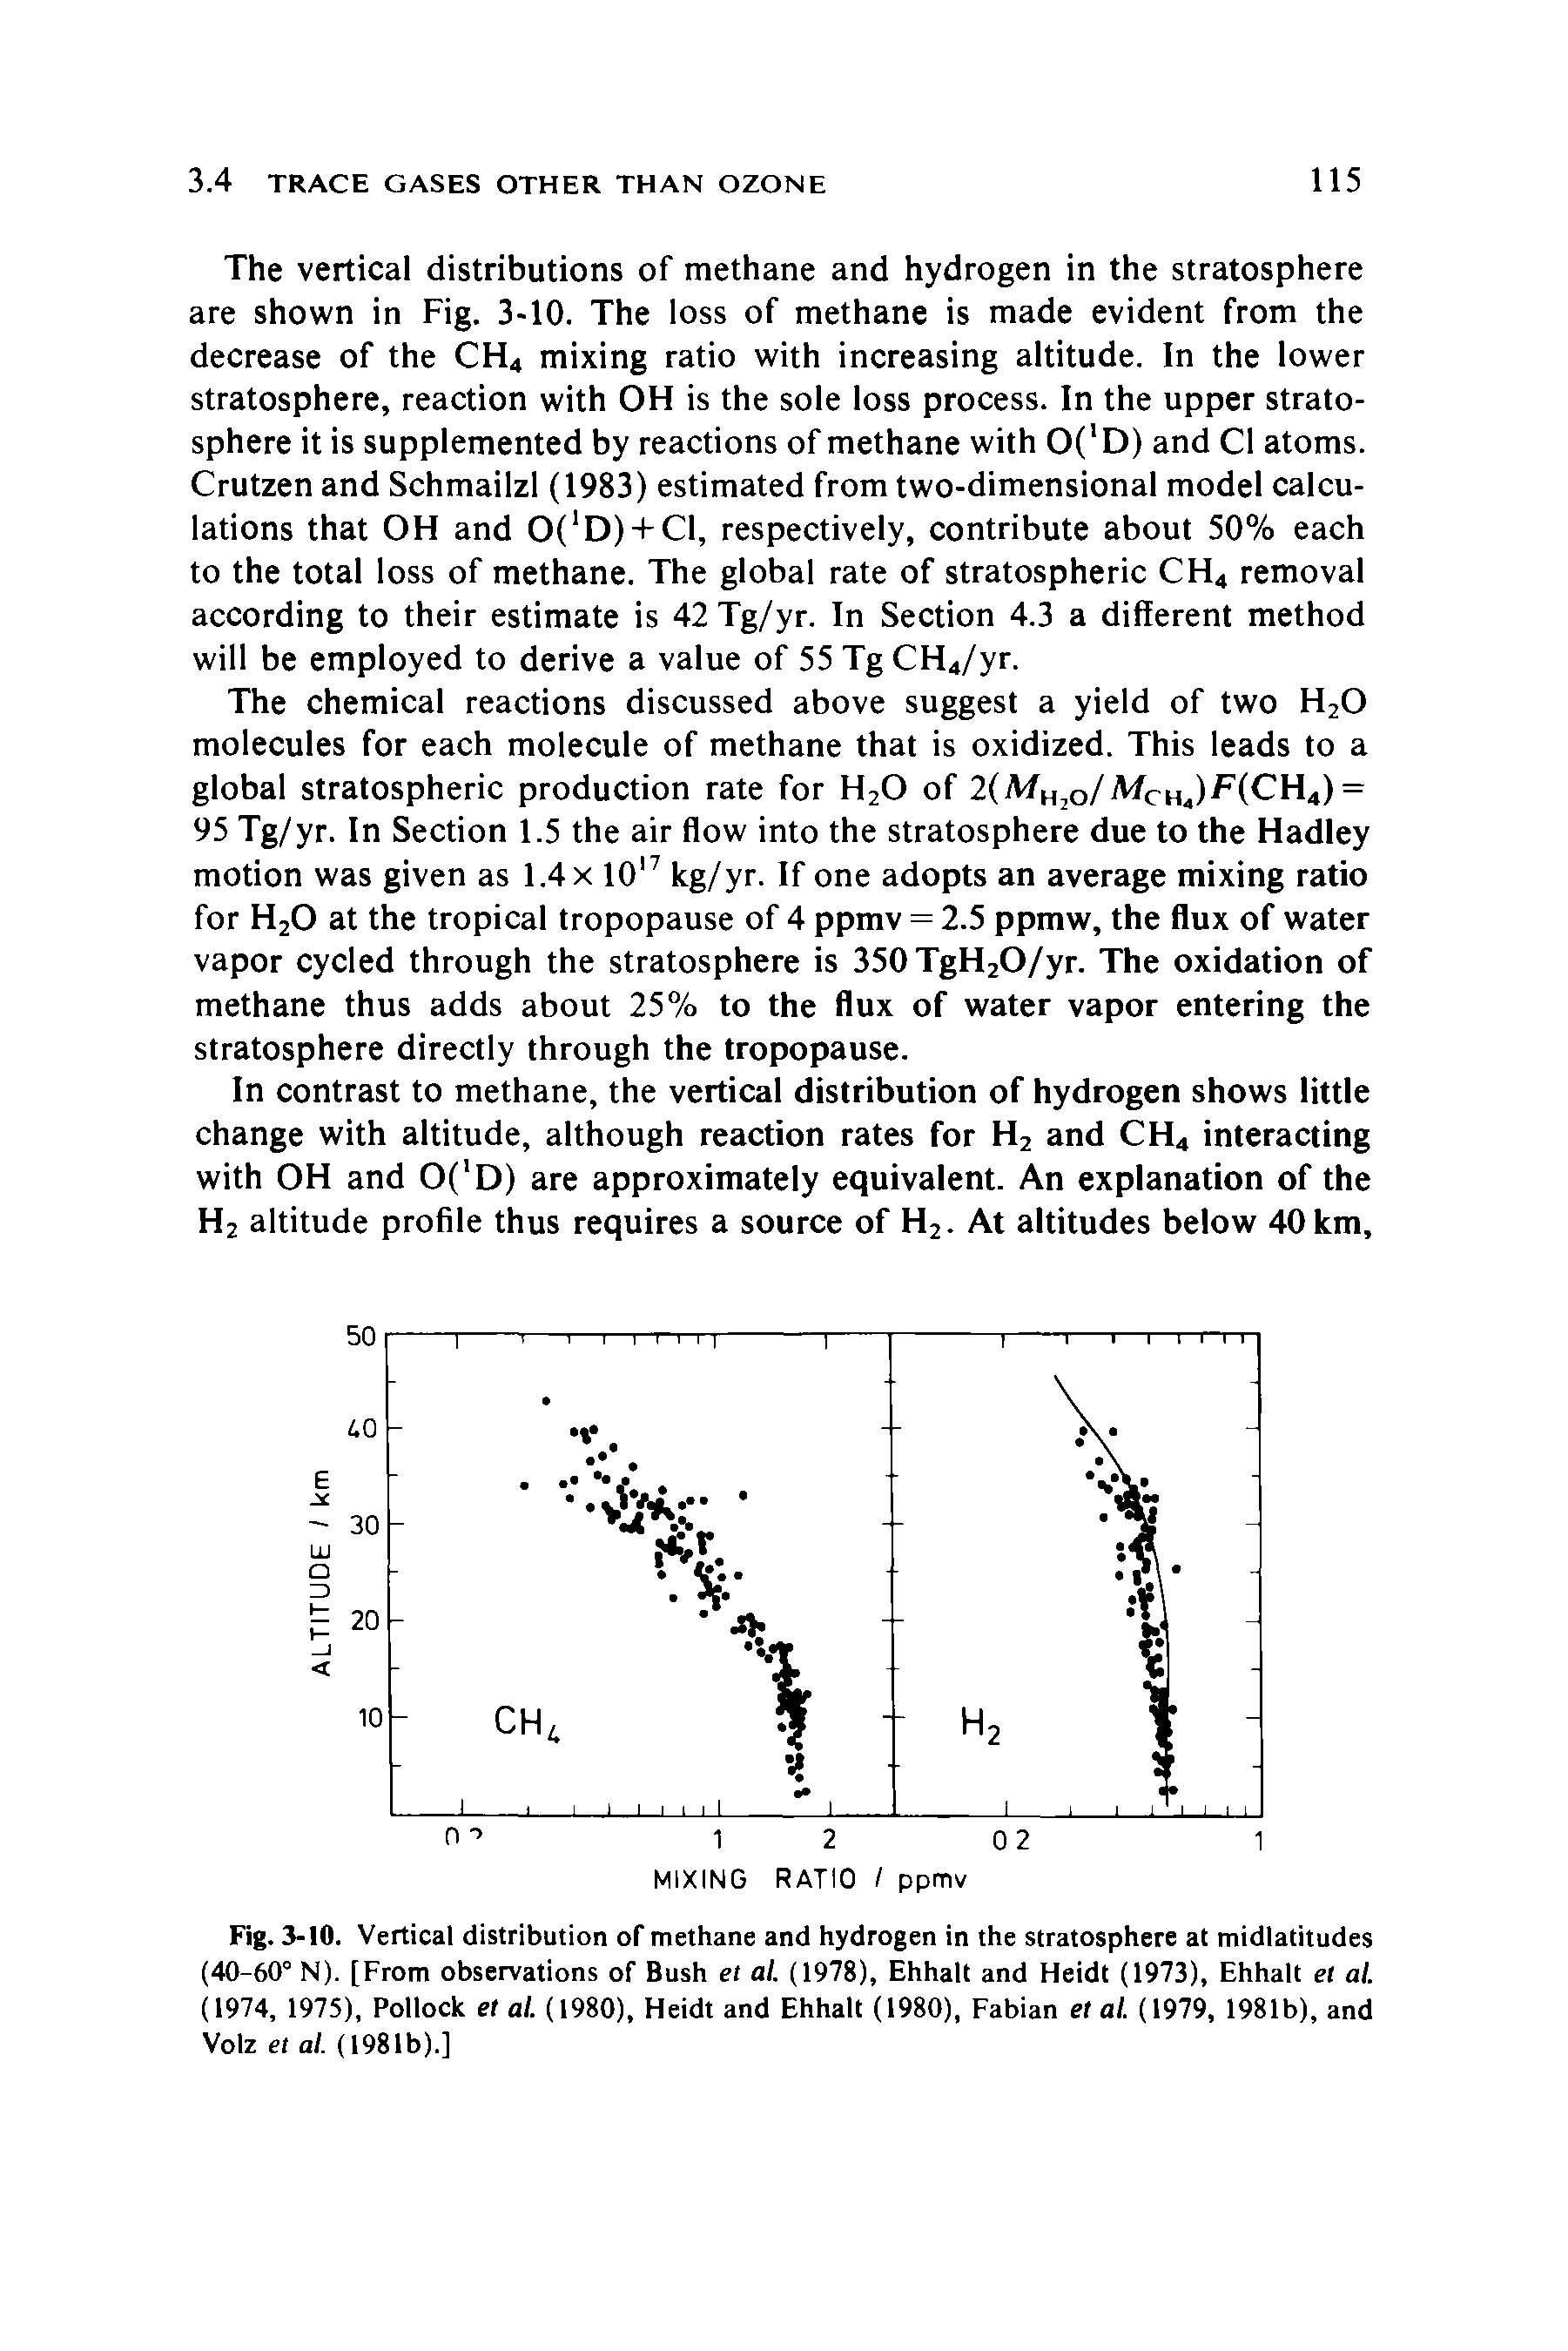 Fig. 3-10. Vertical distribution of methane and hydrogen in the stratosphere at midlatitudes (40-60° N). [From observations of Bush et al. (1978), Ehhalt and Heidt (1973), Ehhalt el al. (1974, 1975), Pollock et al. (1980), Heidt and Ehhalt (1980), Fabian et al. (1979, 1981b), and Volz et al. (1981b).]...